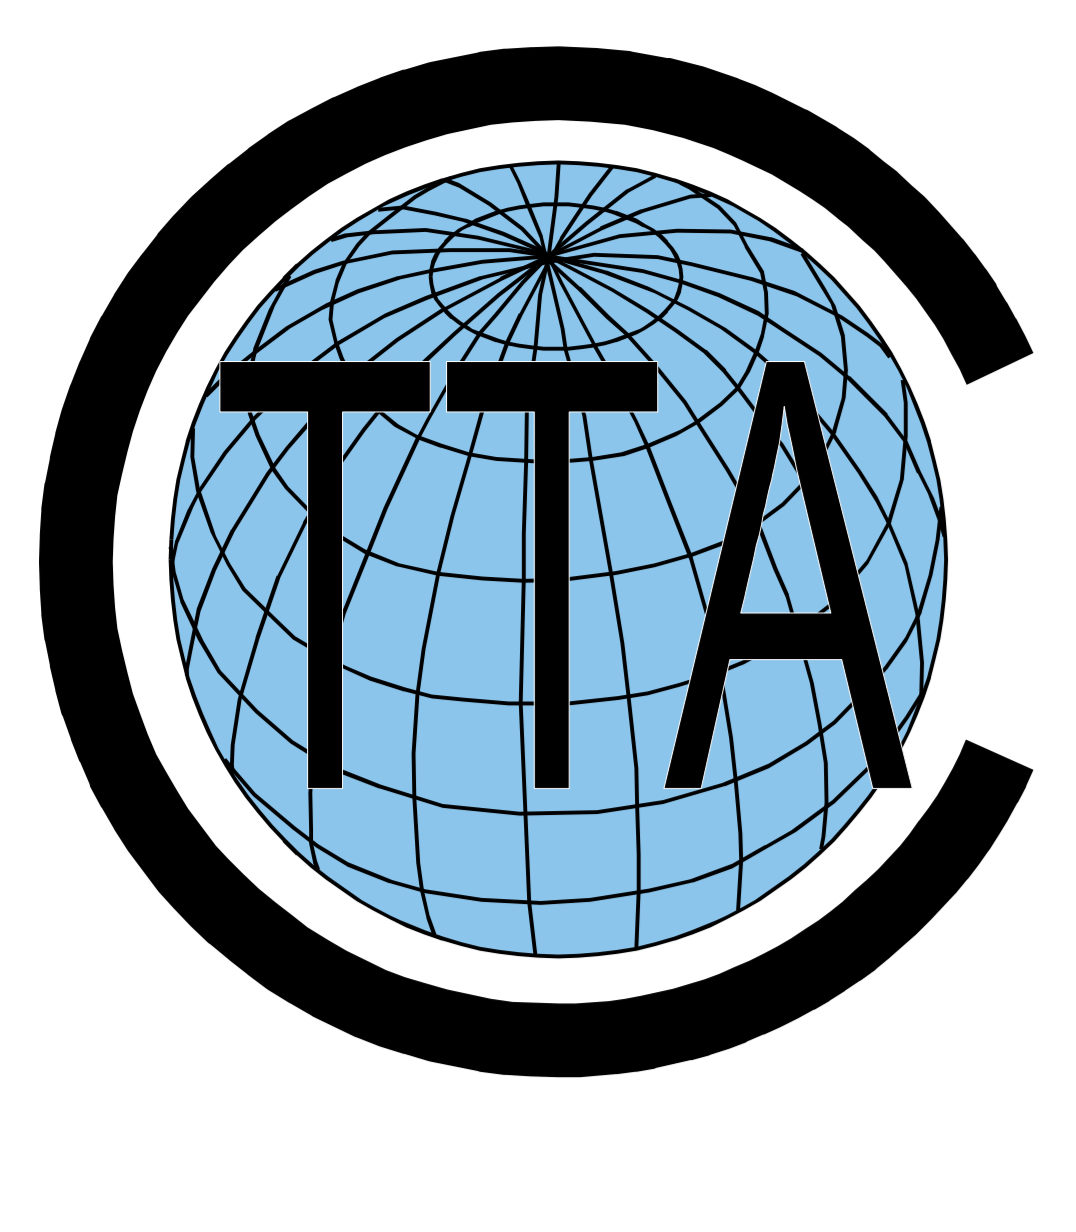 GTTA Logo